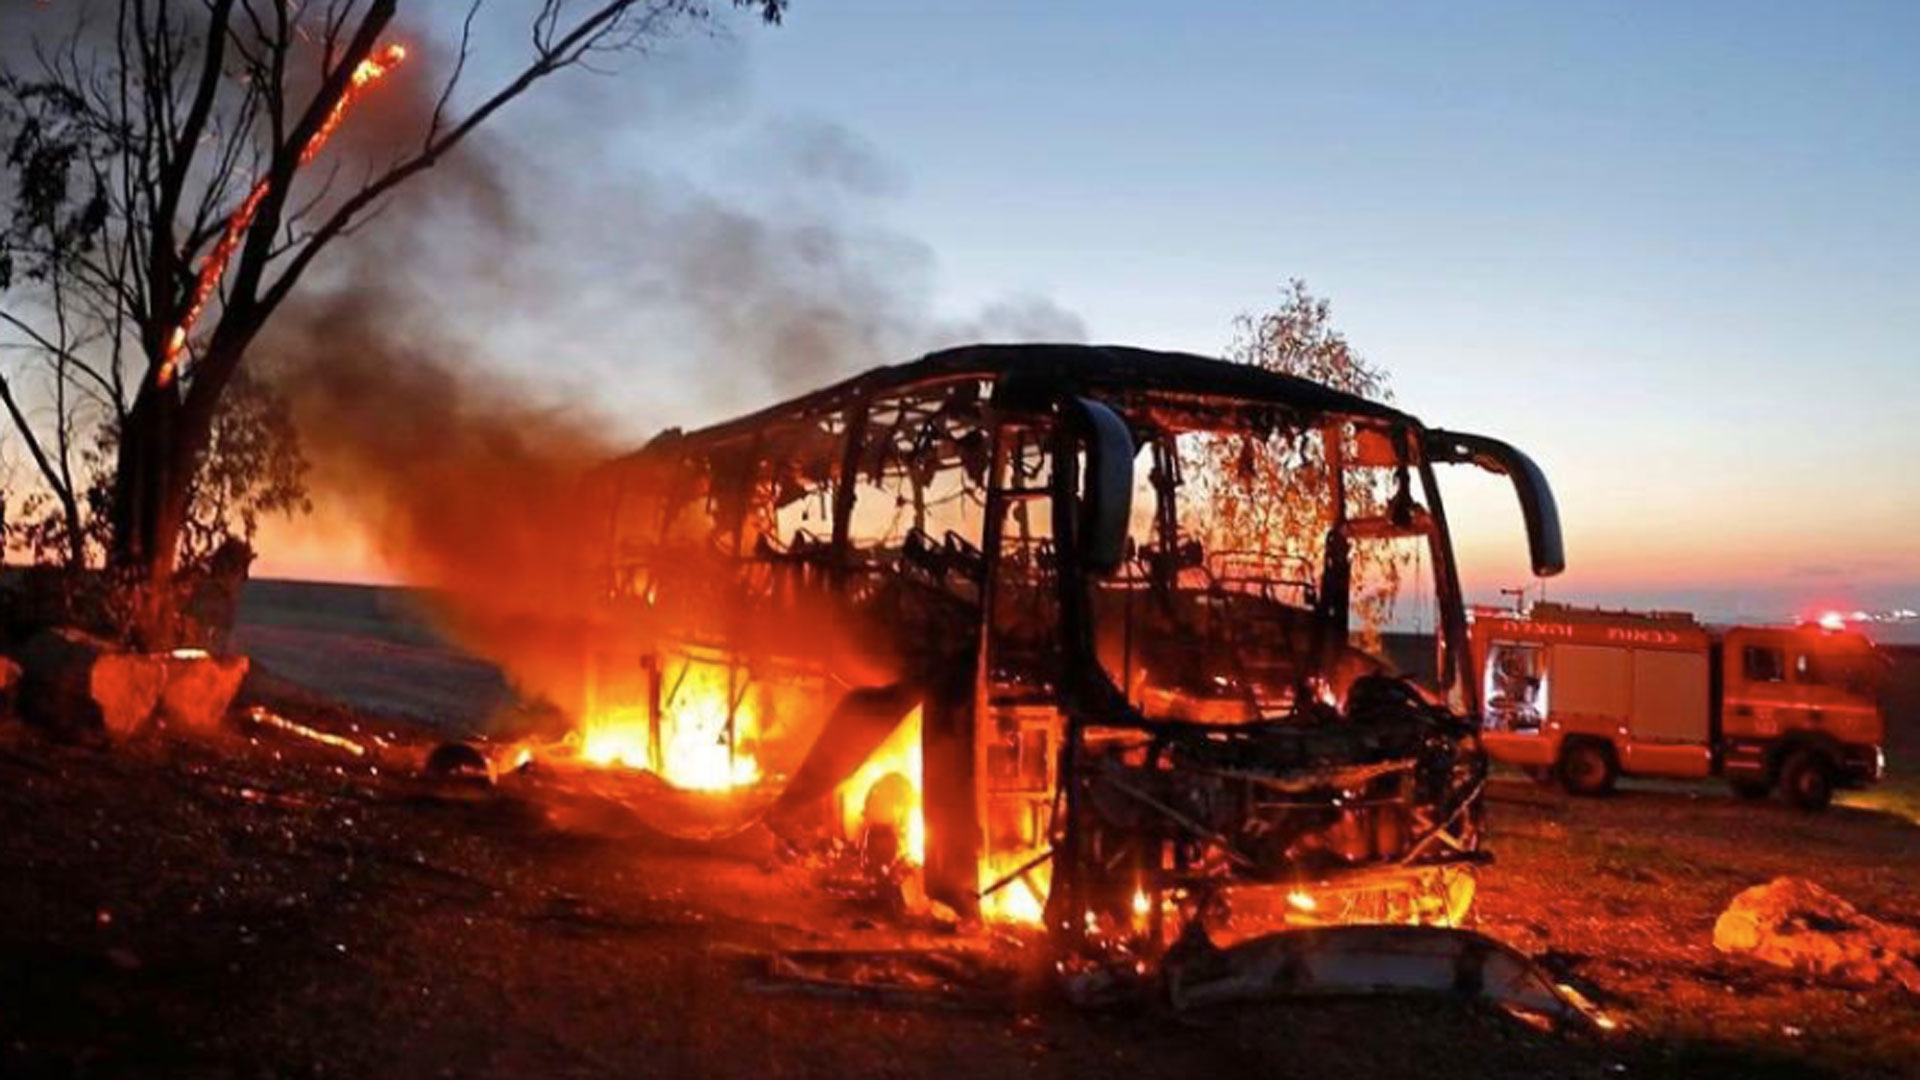 Ein Armeebus ging nach dem Treffer einer Panzerabwehrrakete in Flammen auf